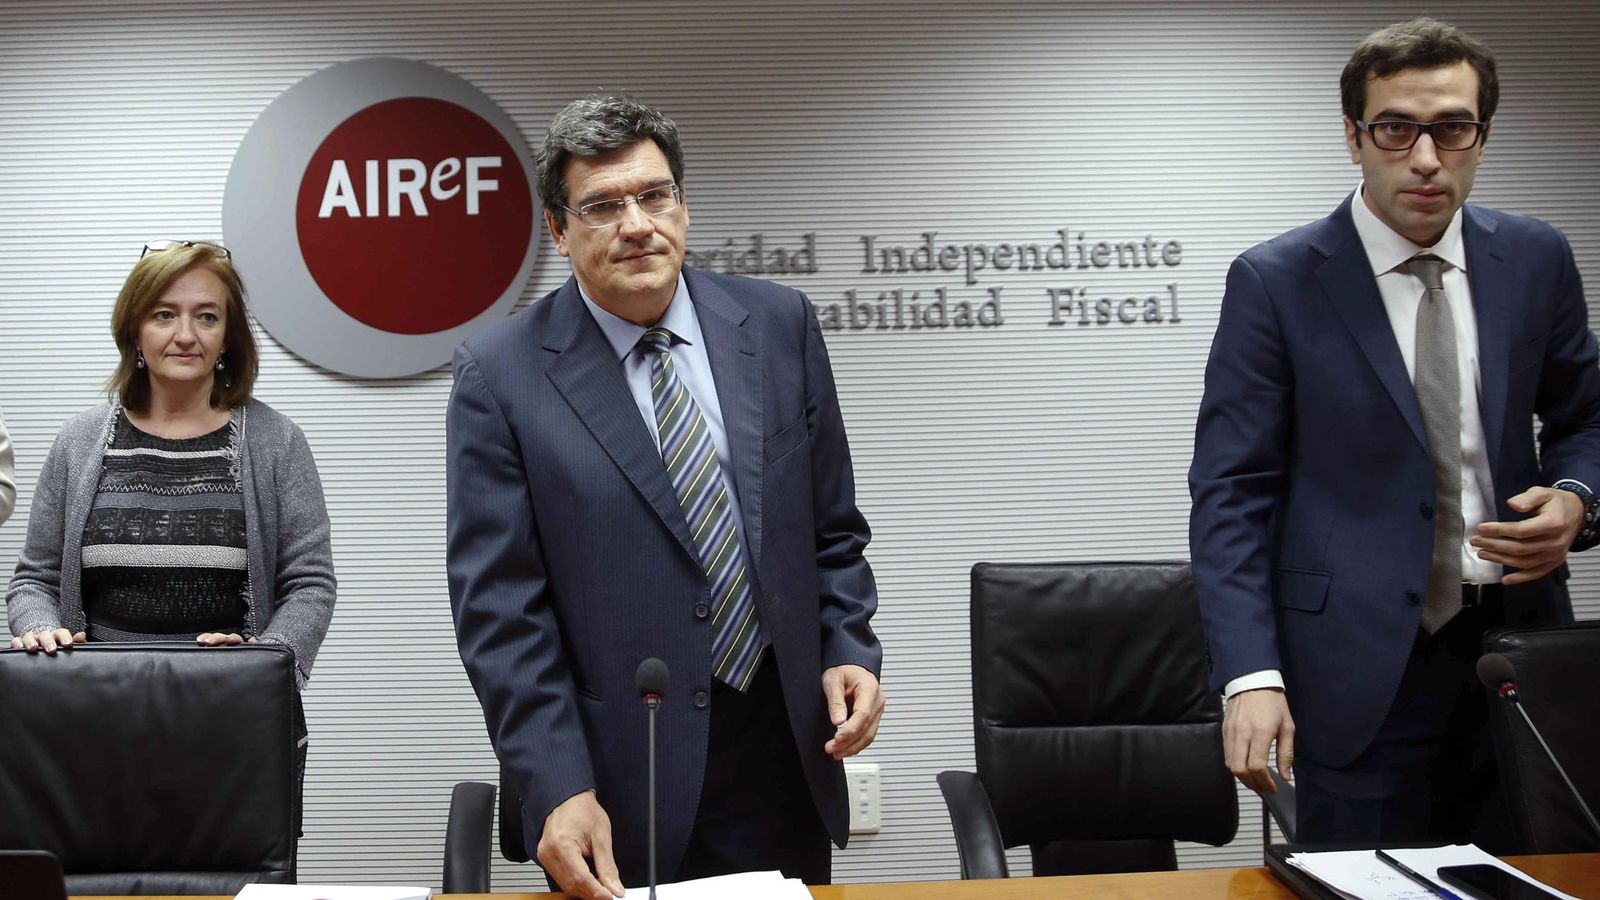 Foto: El presidente de la Autoridad Independiente de Responsabilidad Fiscal (AIReF), José Luis Escrivá, la directora de la División de Análisis Presupuestario Cristina Herrero, y el economista Carlos Cuerpo. (EFE)